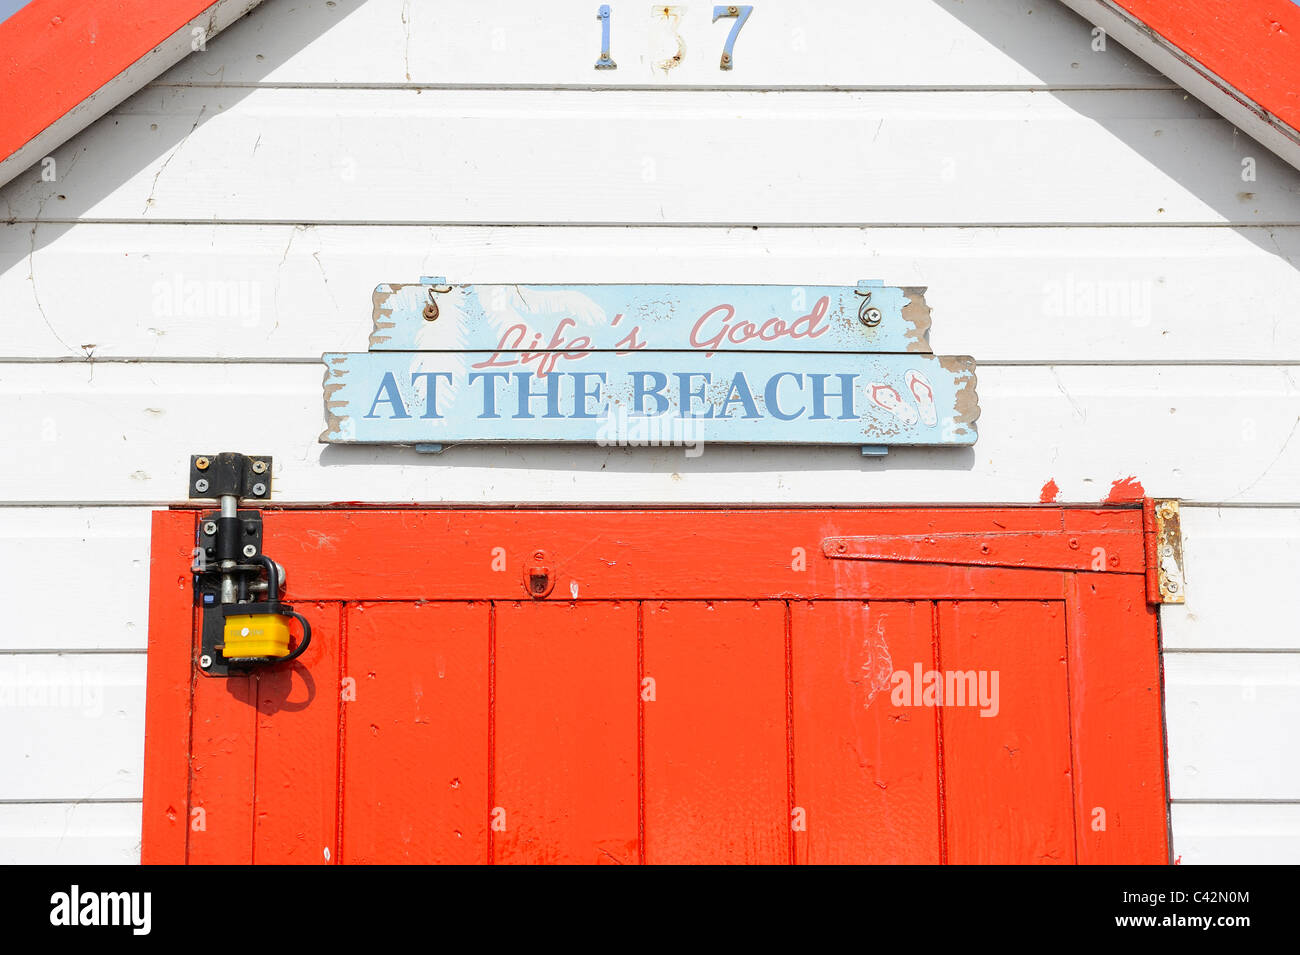 Strandhütte mit Leben gut am Strand melden Sie Devon England uk Stockfoto